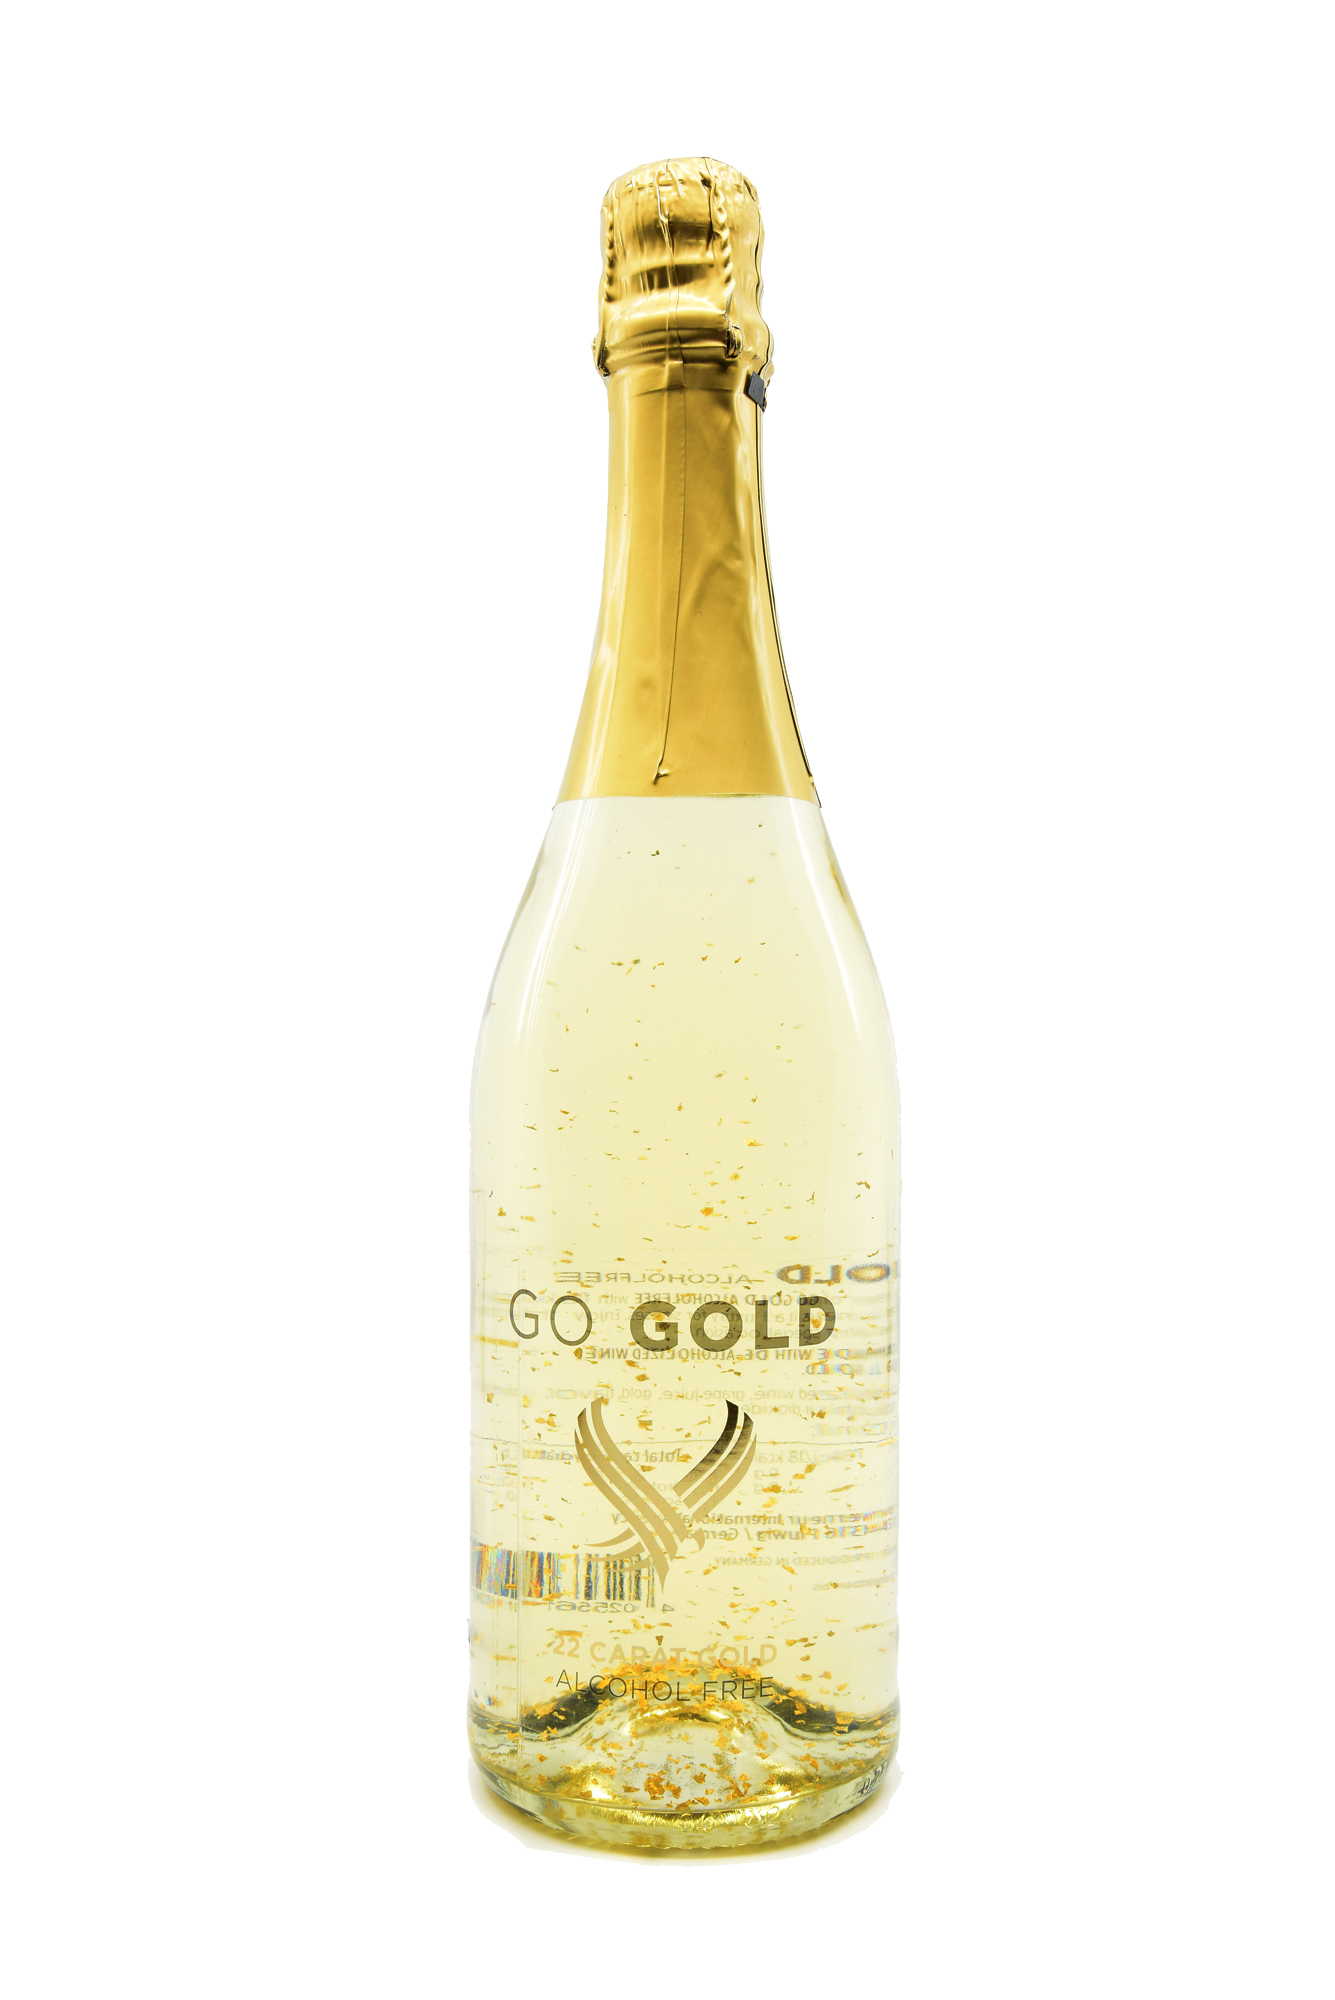 Go Gold Light 22 Karat - 0,75l - alkoholfreier Sekt